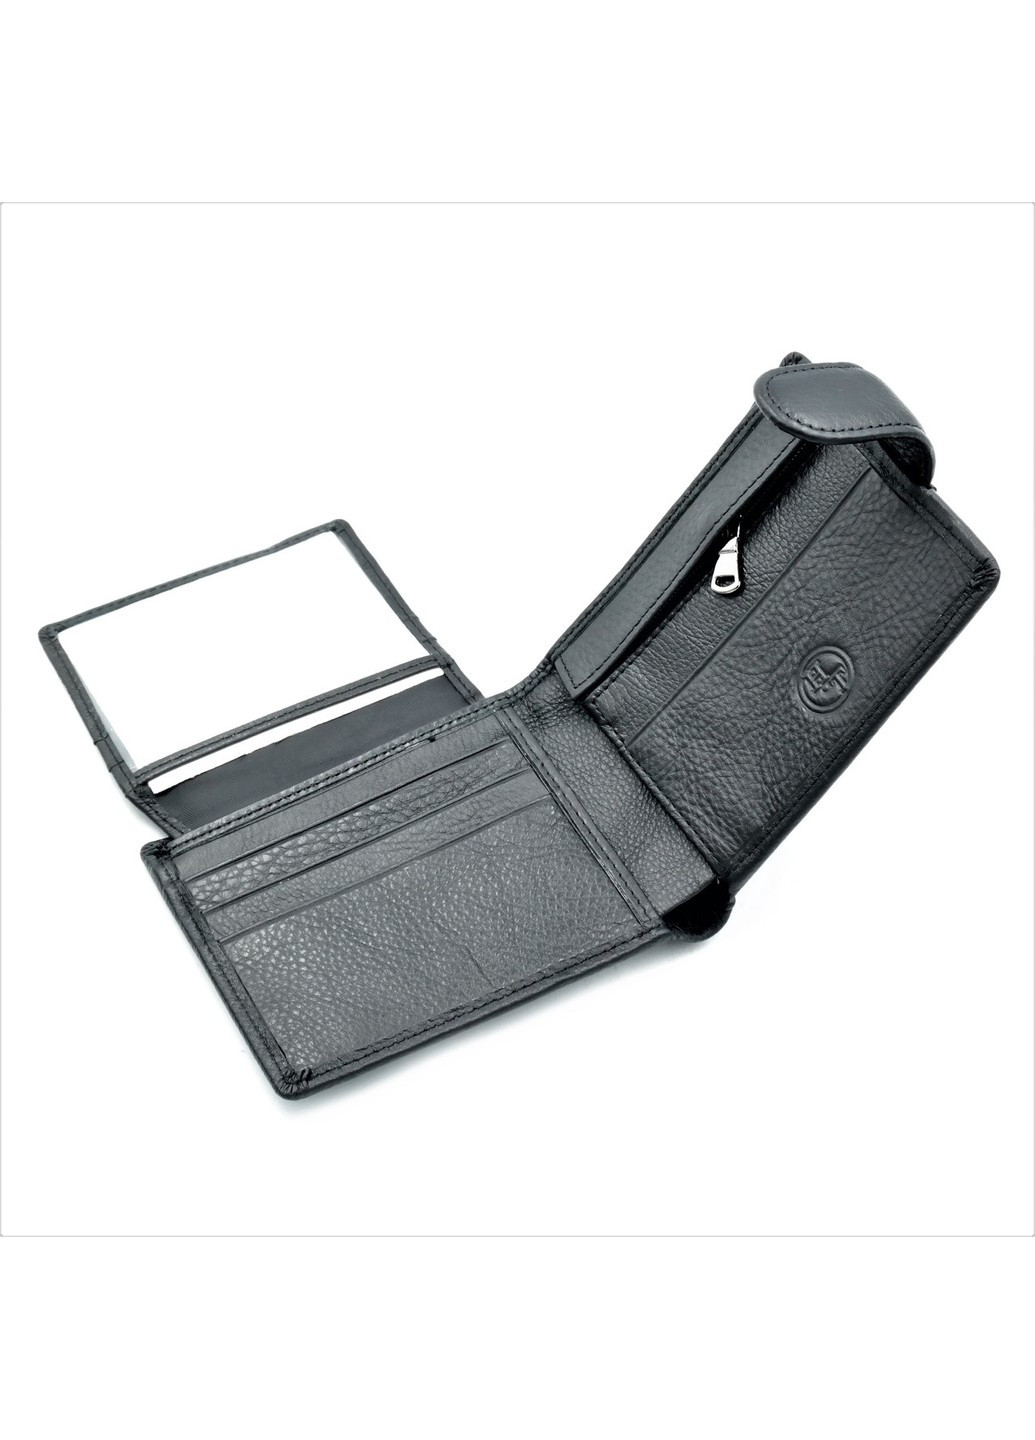 Мужской кожаный кошелек 12 х 9 х 2,5 см Черный wtro-nw-163-ND16A-04 Weatro (272596156)